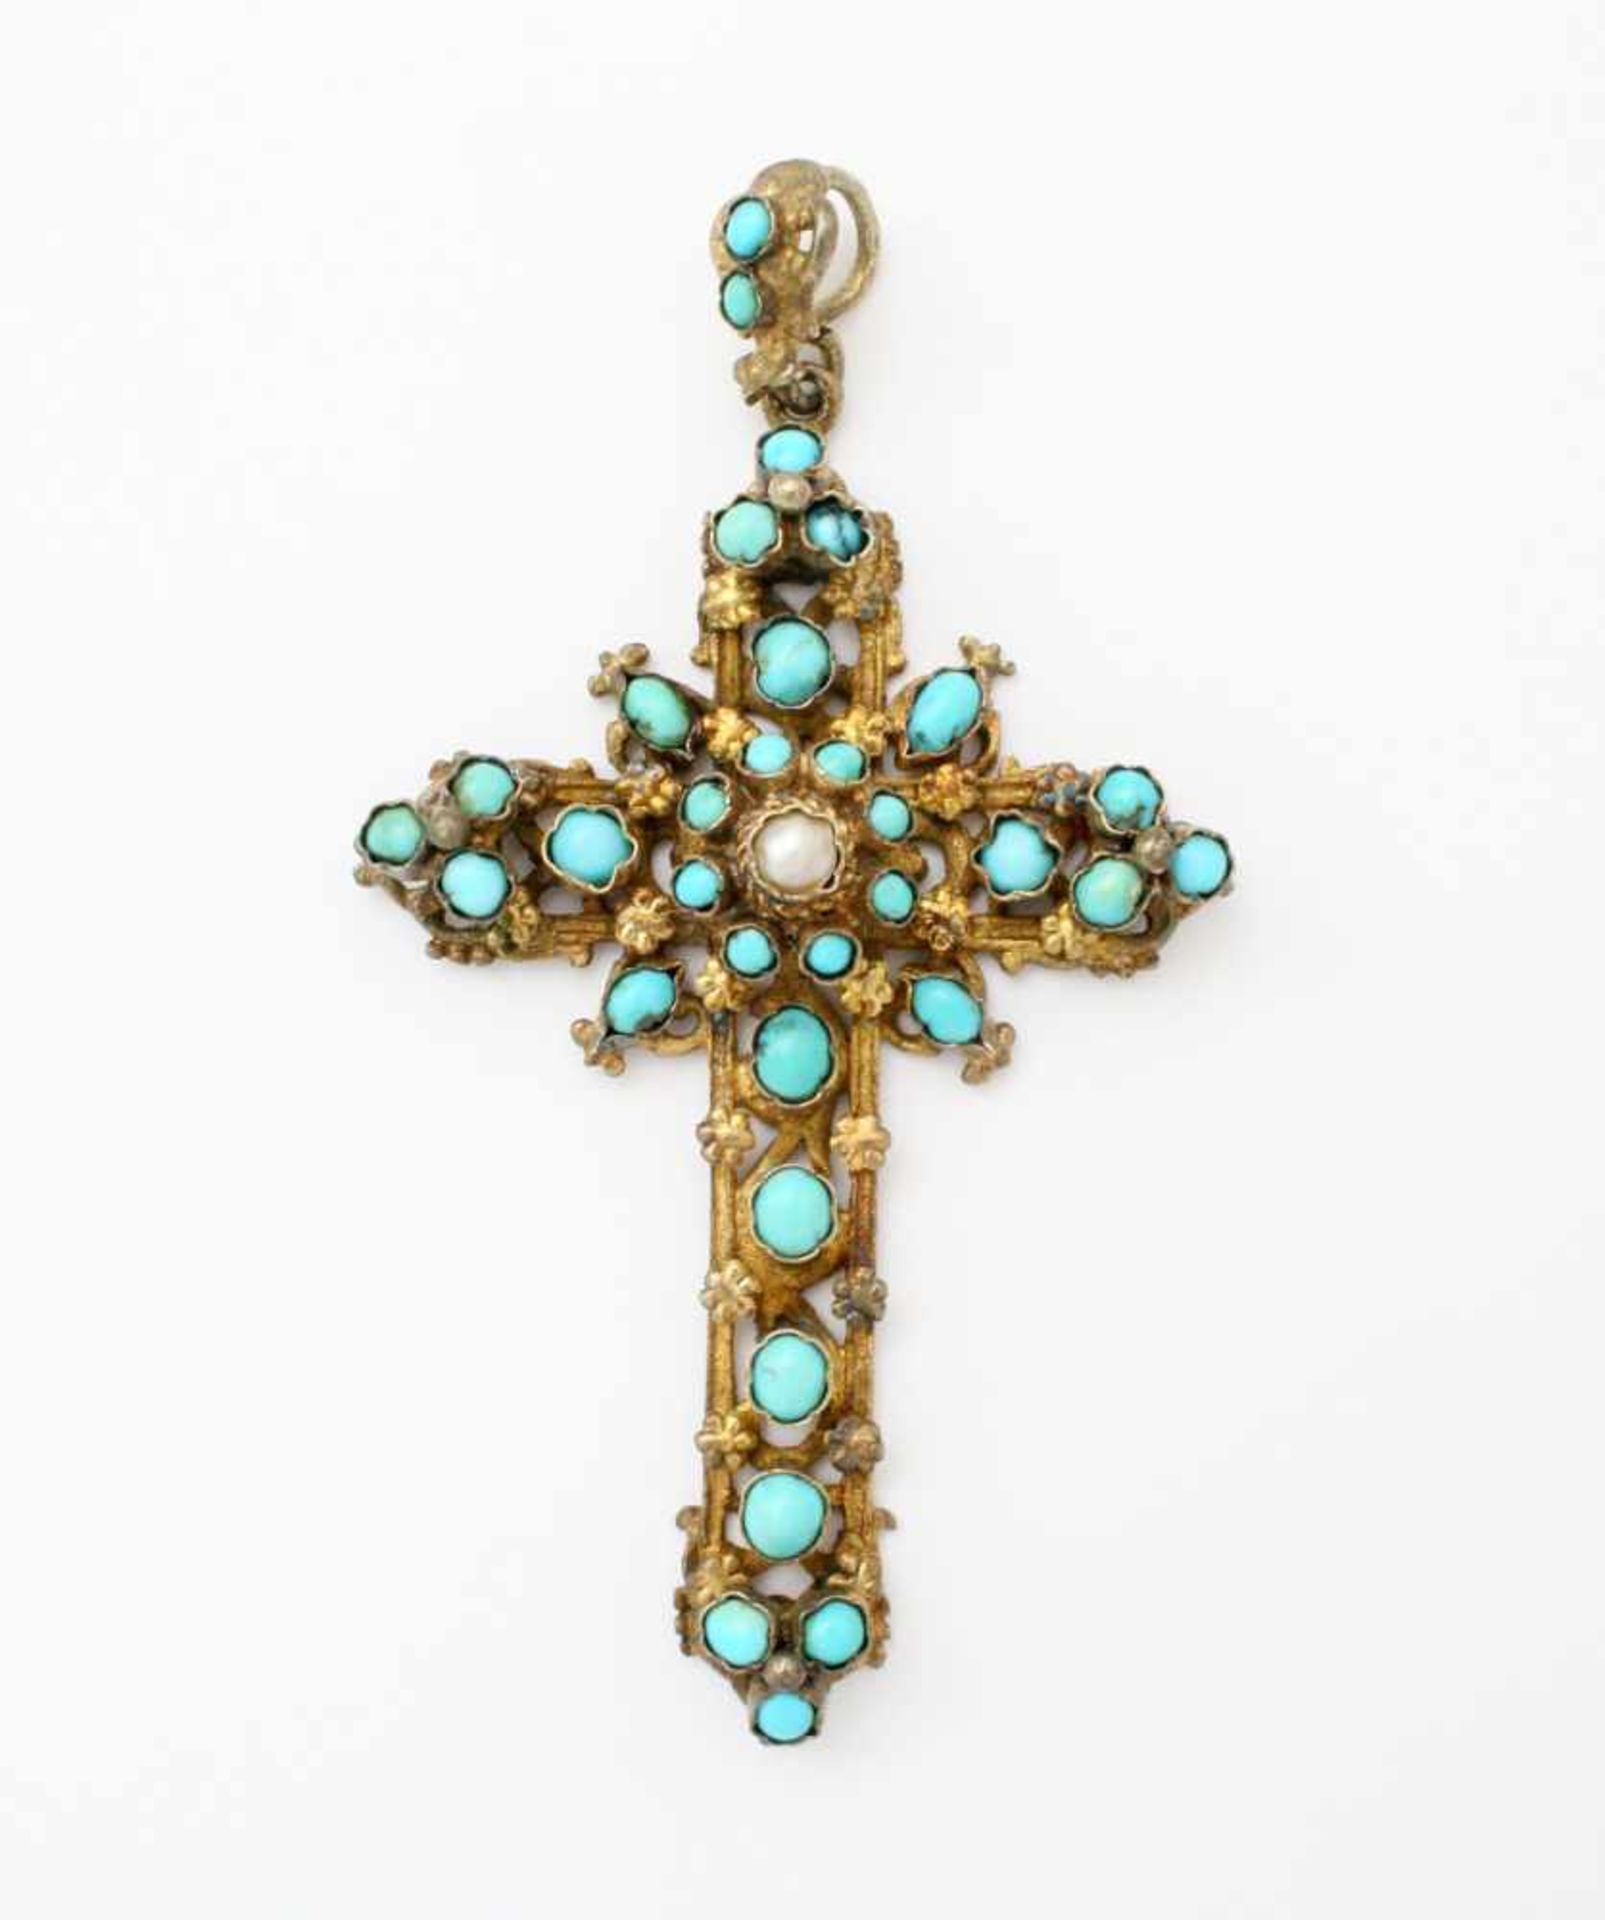 Vergoldetes Jugendstilkreuz mit Türkisbesatz Floral verziertes Kreuz, auf 2 Ebenen, teilweise